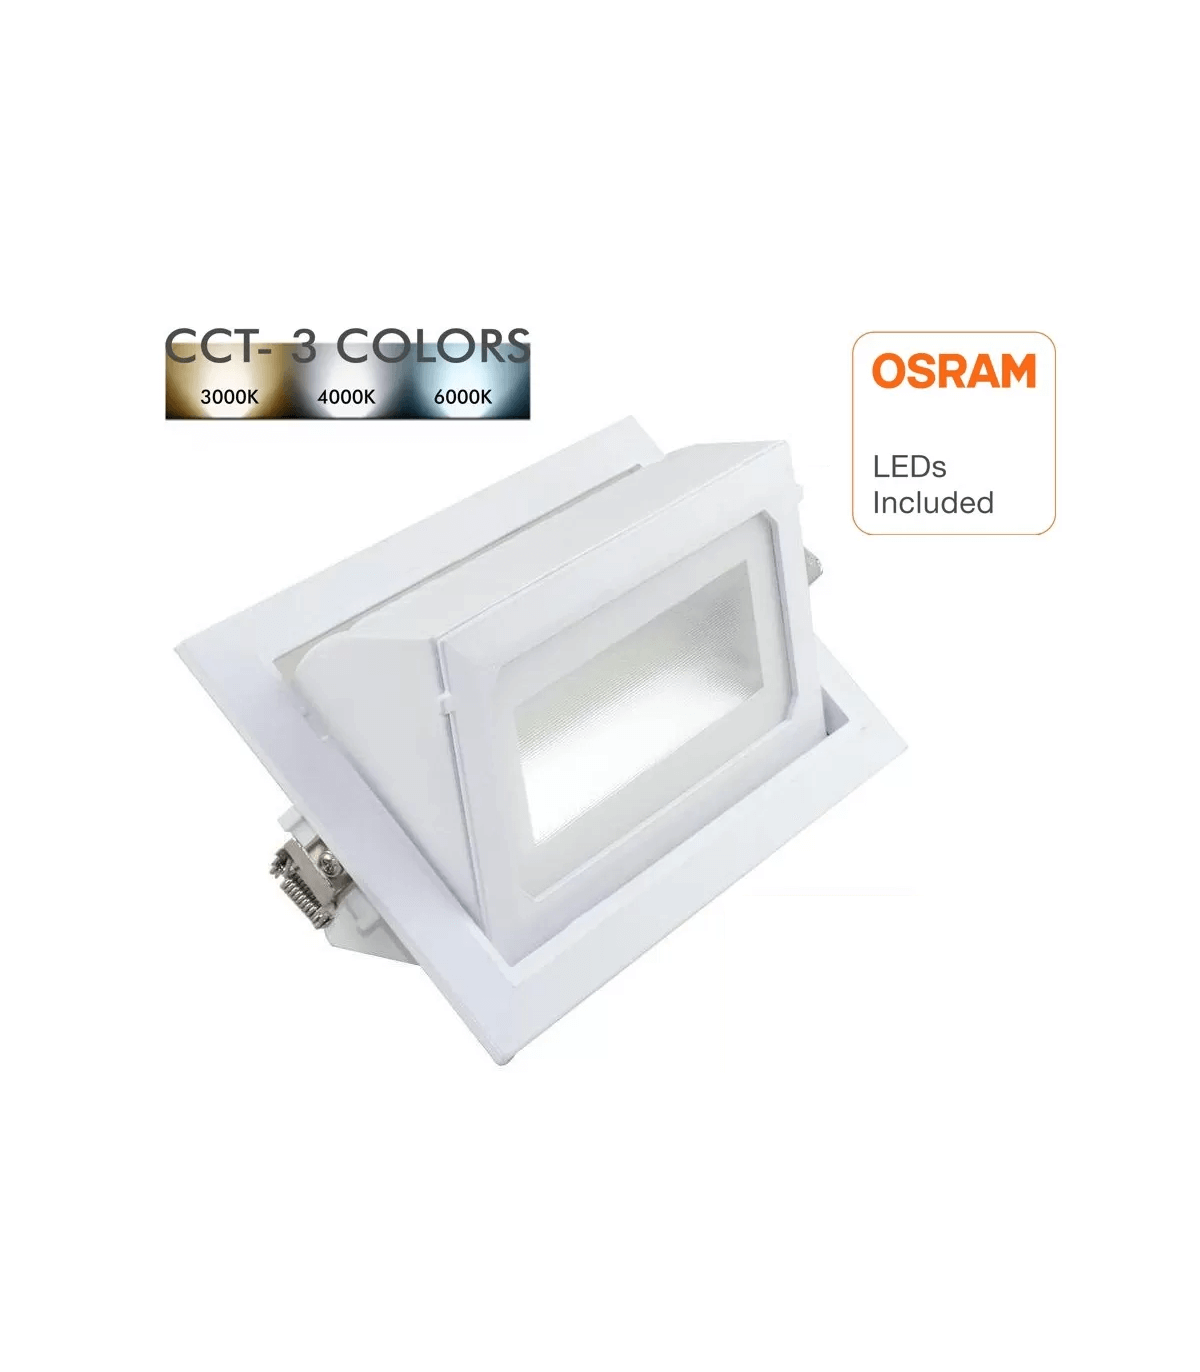 Néon LED Luxen 18W substitut 36W 1900lumens blanc lumière du jour 6500K  120cm G13